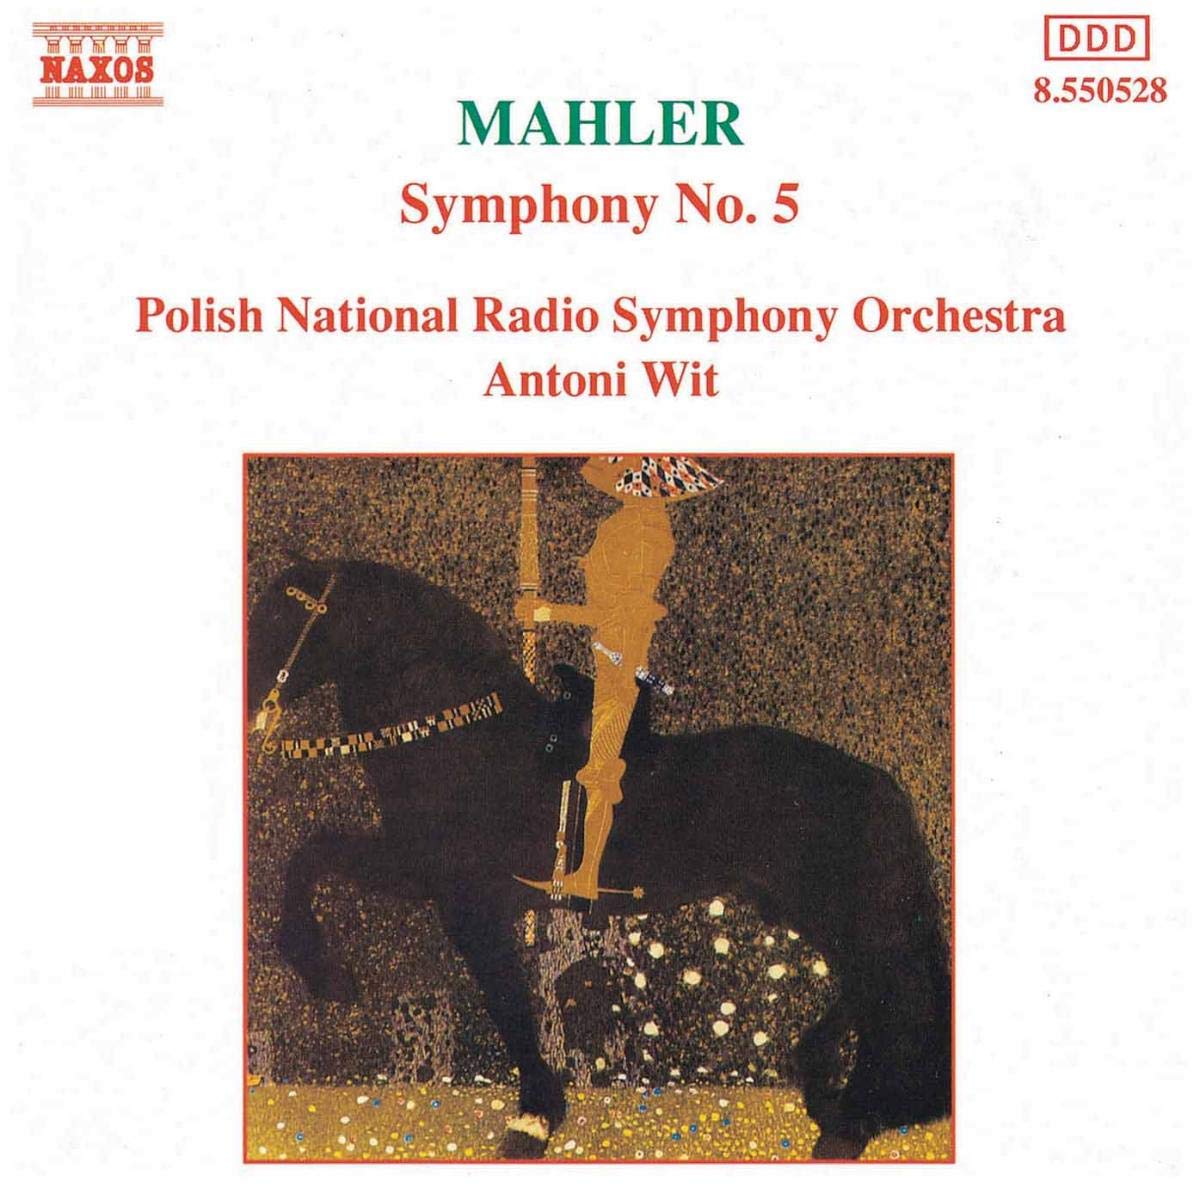 MAHLER: Symphony no. 5